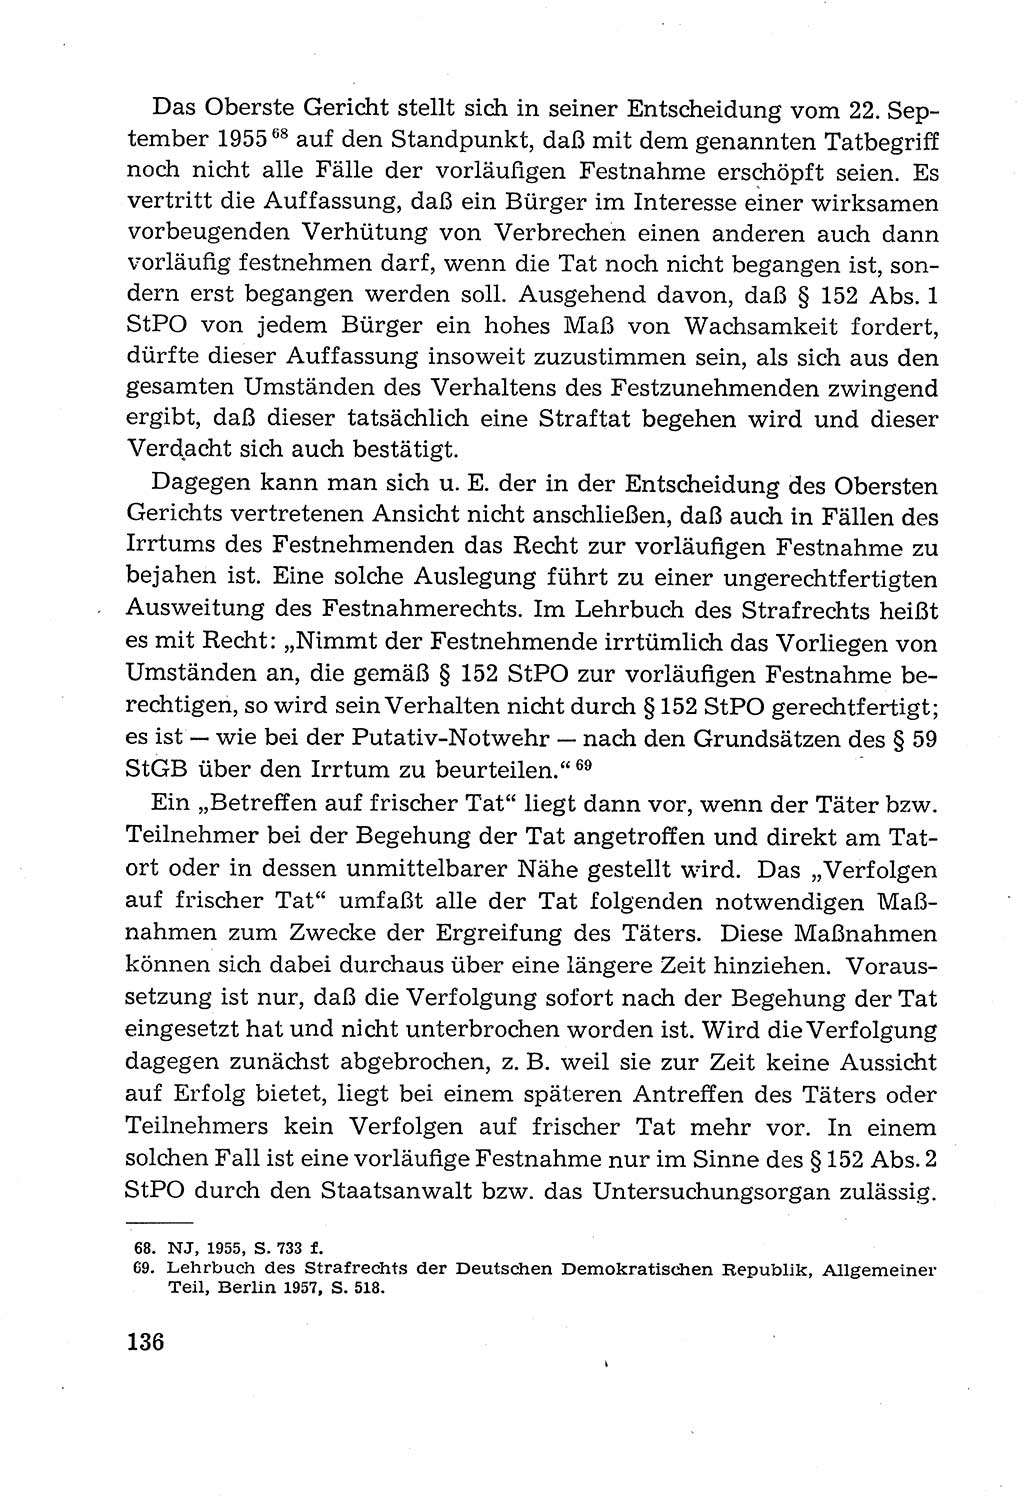 Leitfaden des Strafprozeßrechts der Deutschen Demokratischen Republik (DDR) 1959, Seite 136 (LF StPR DDR 1959, S. 136)